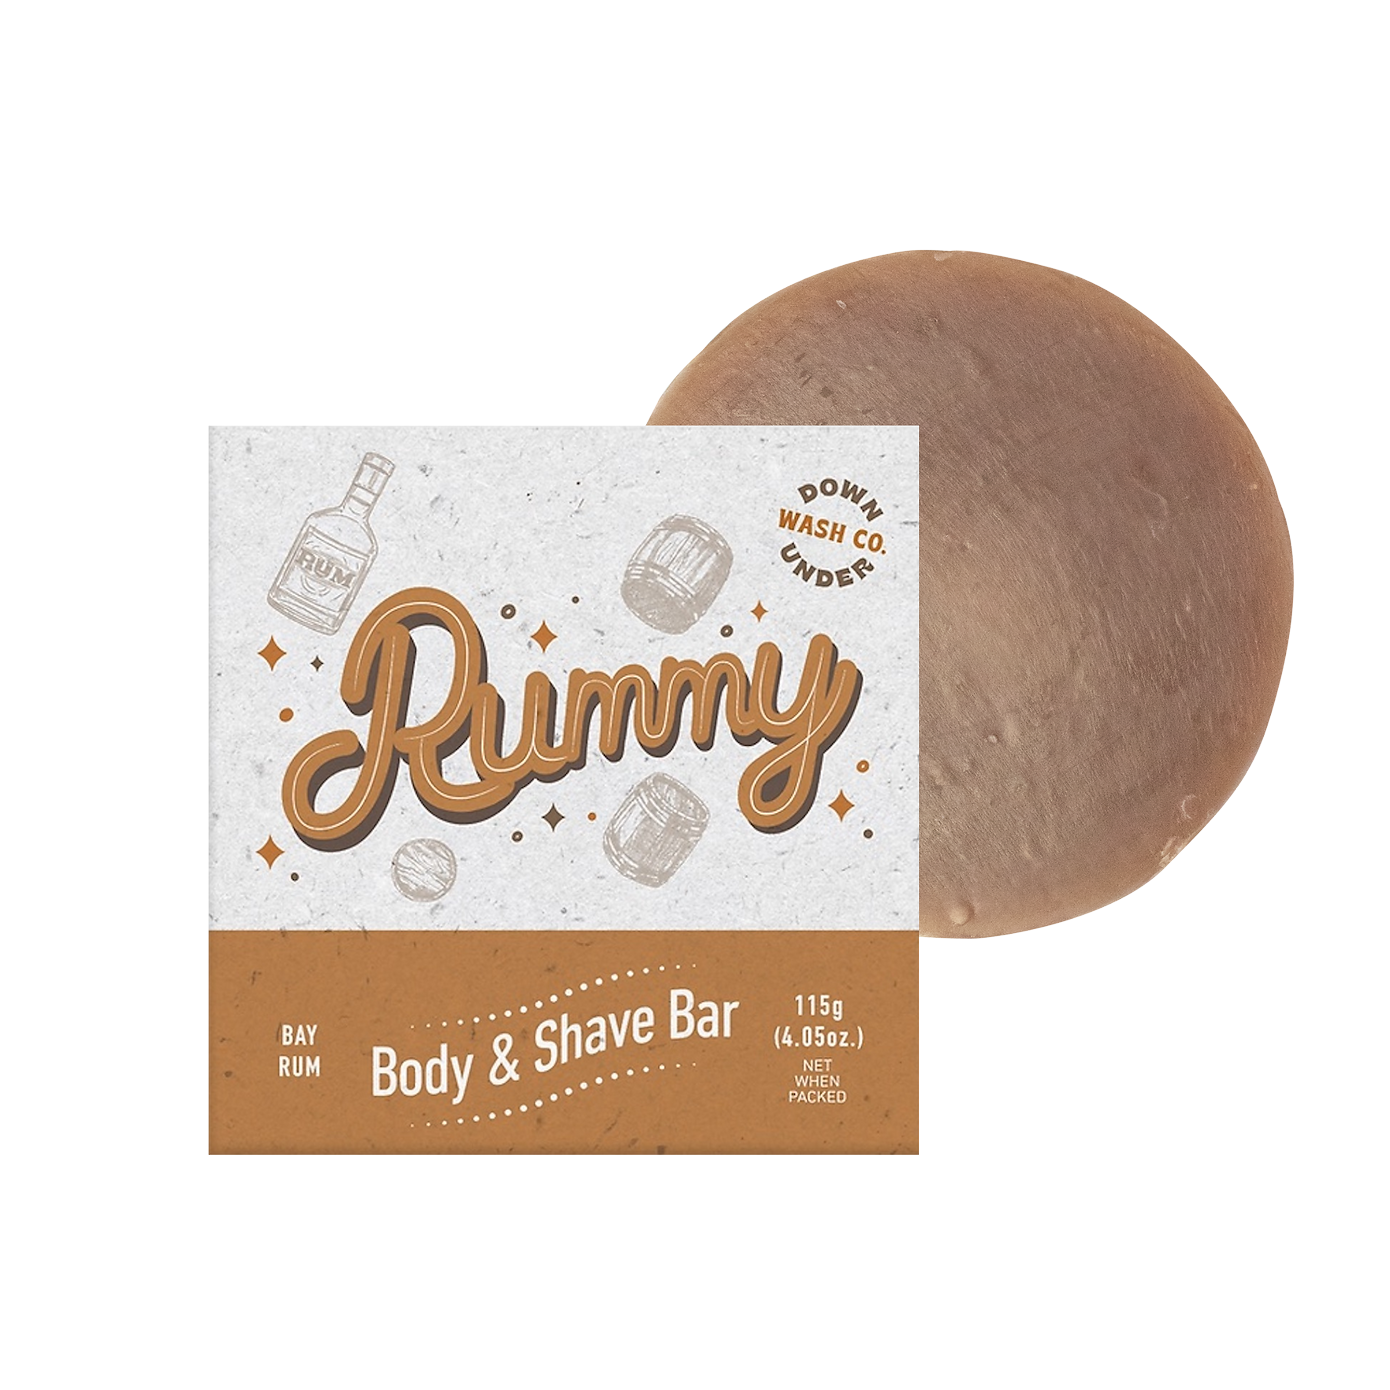 Downunder Wash Co Ruffy Rummy Body & Shave Bar 115g, Bay Rum